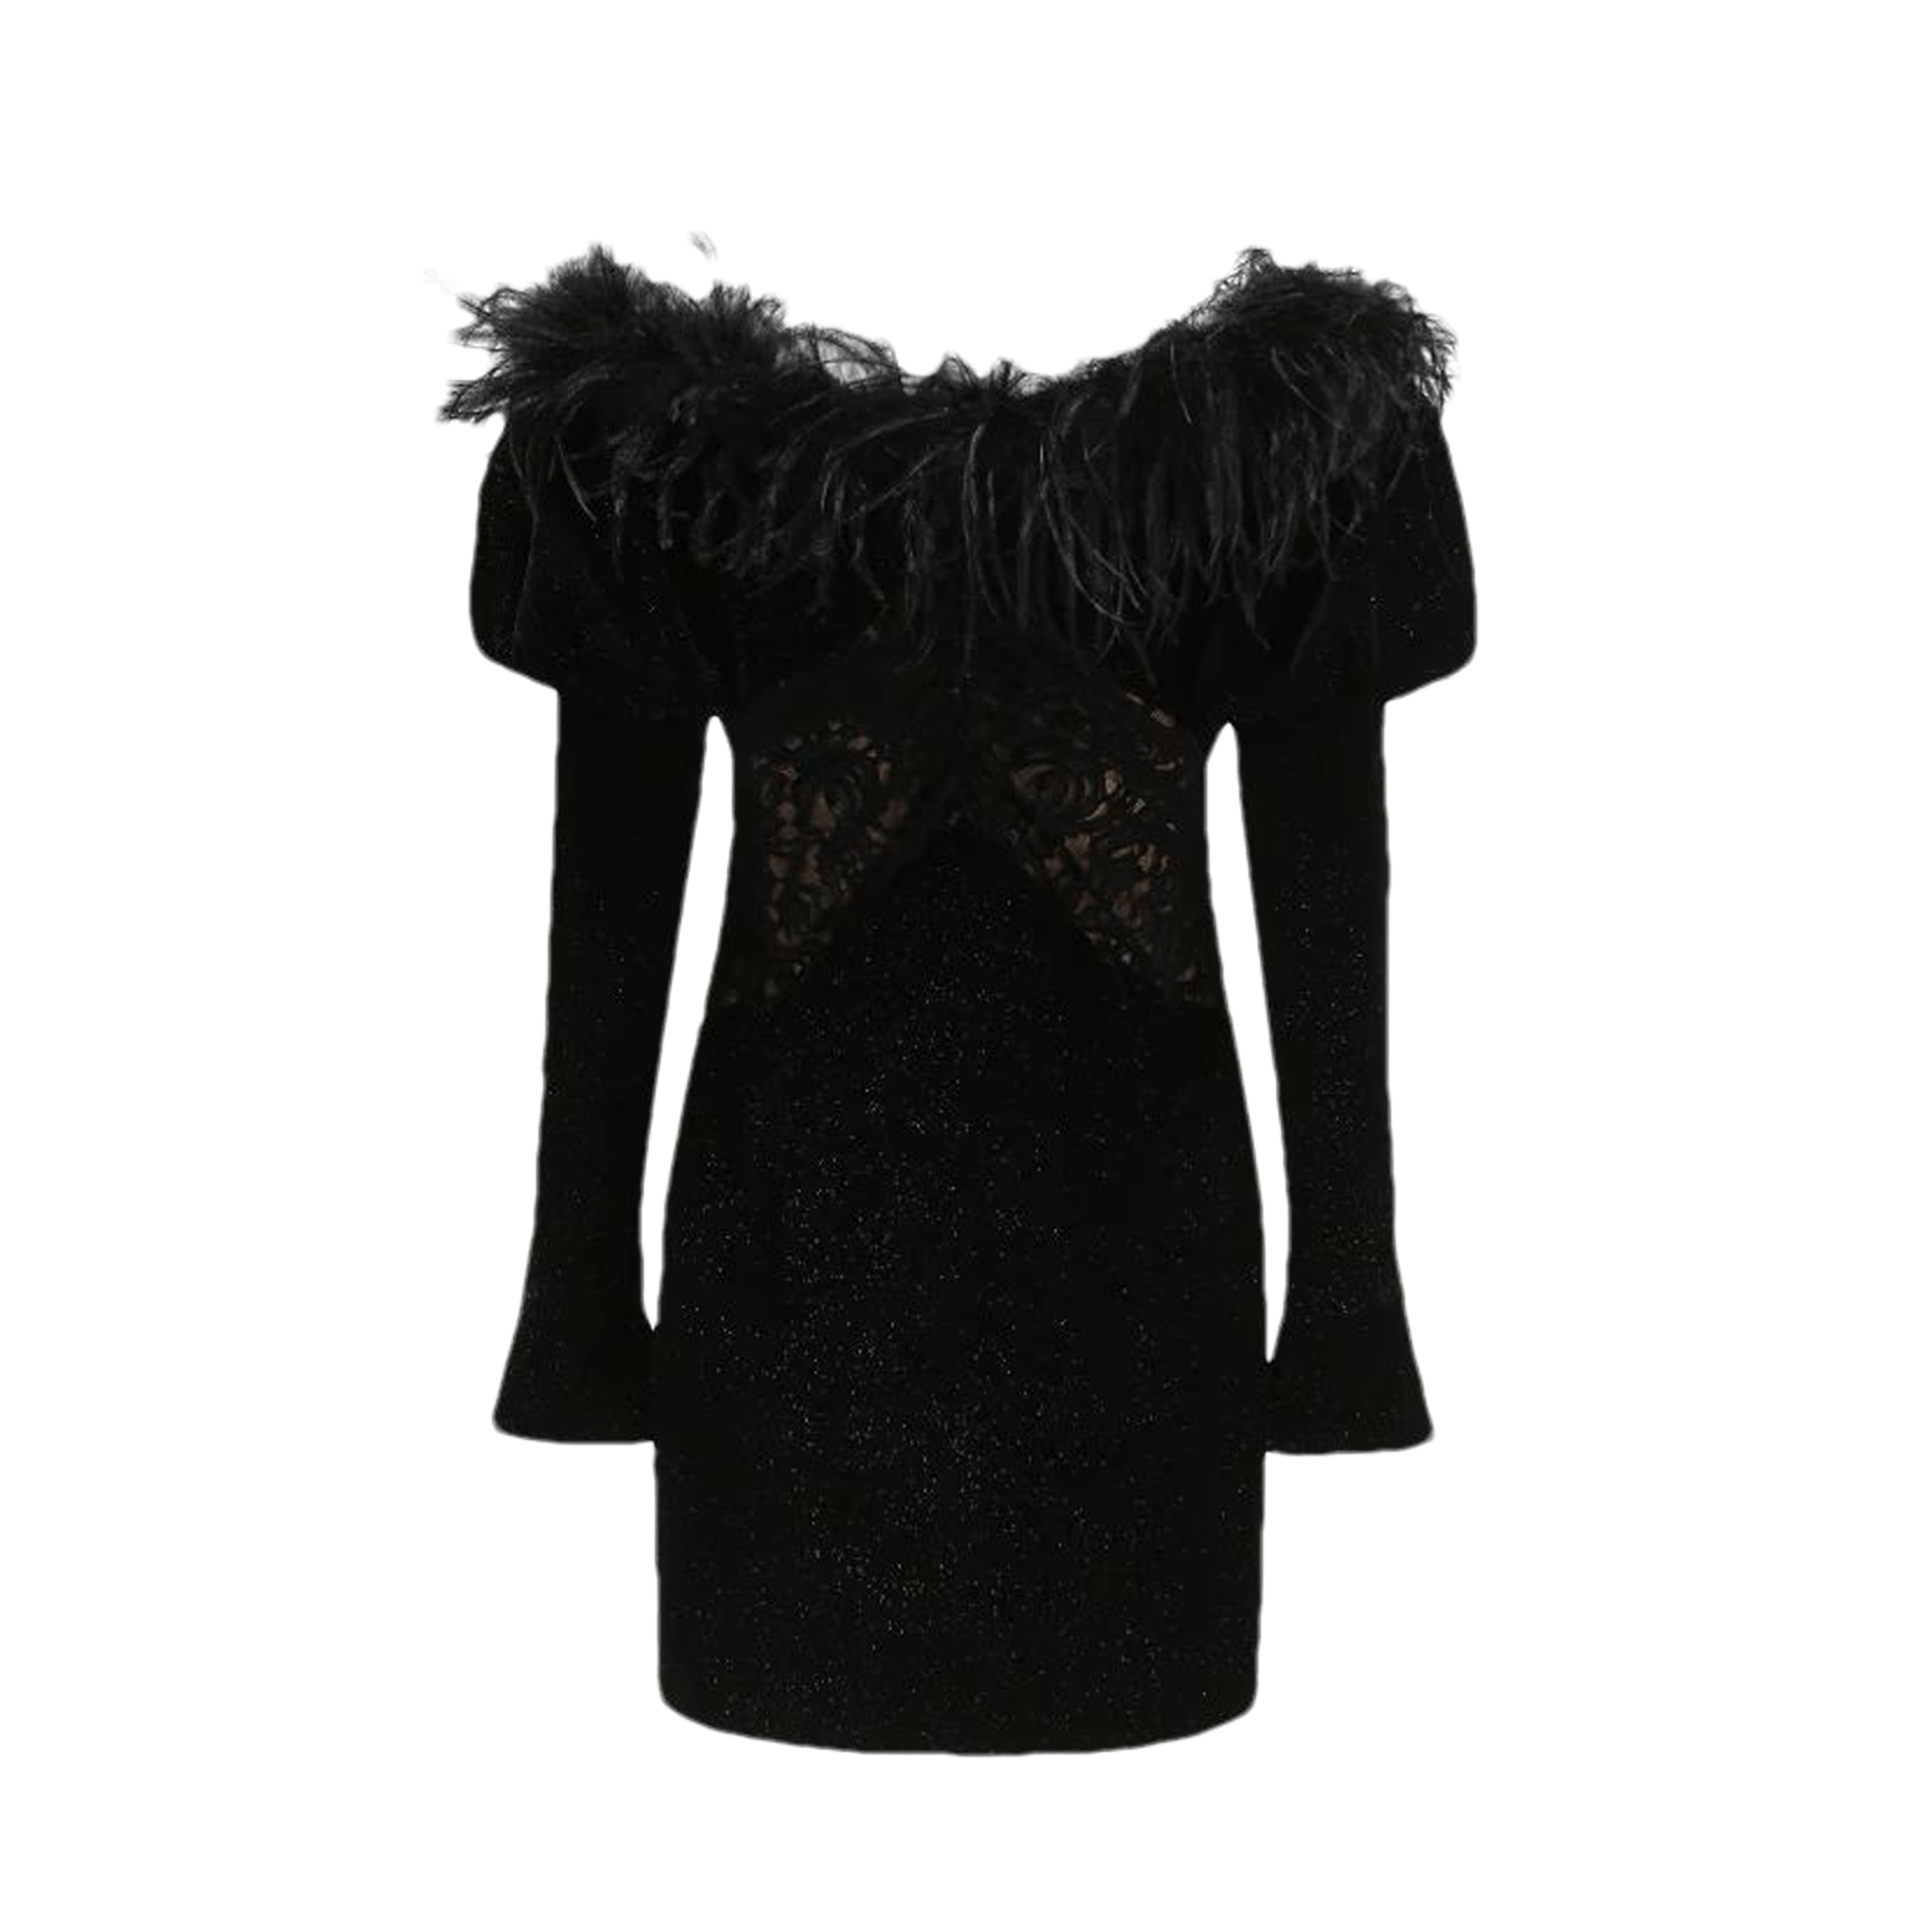 Eve velvet dress - Miss Rosier - Women's Online Boutique